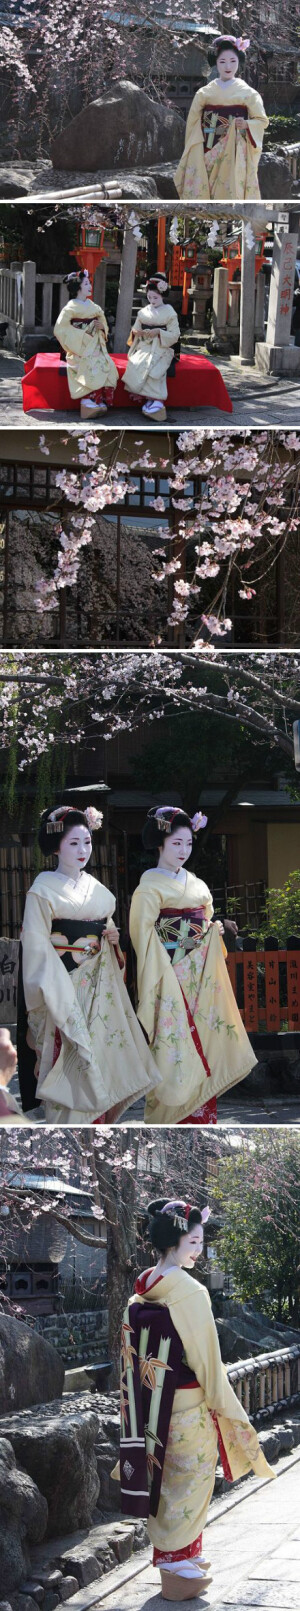 京都祇园白川，舞妓与樱花。摄影by ひまわり